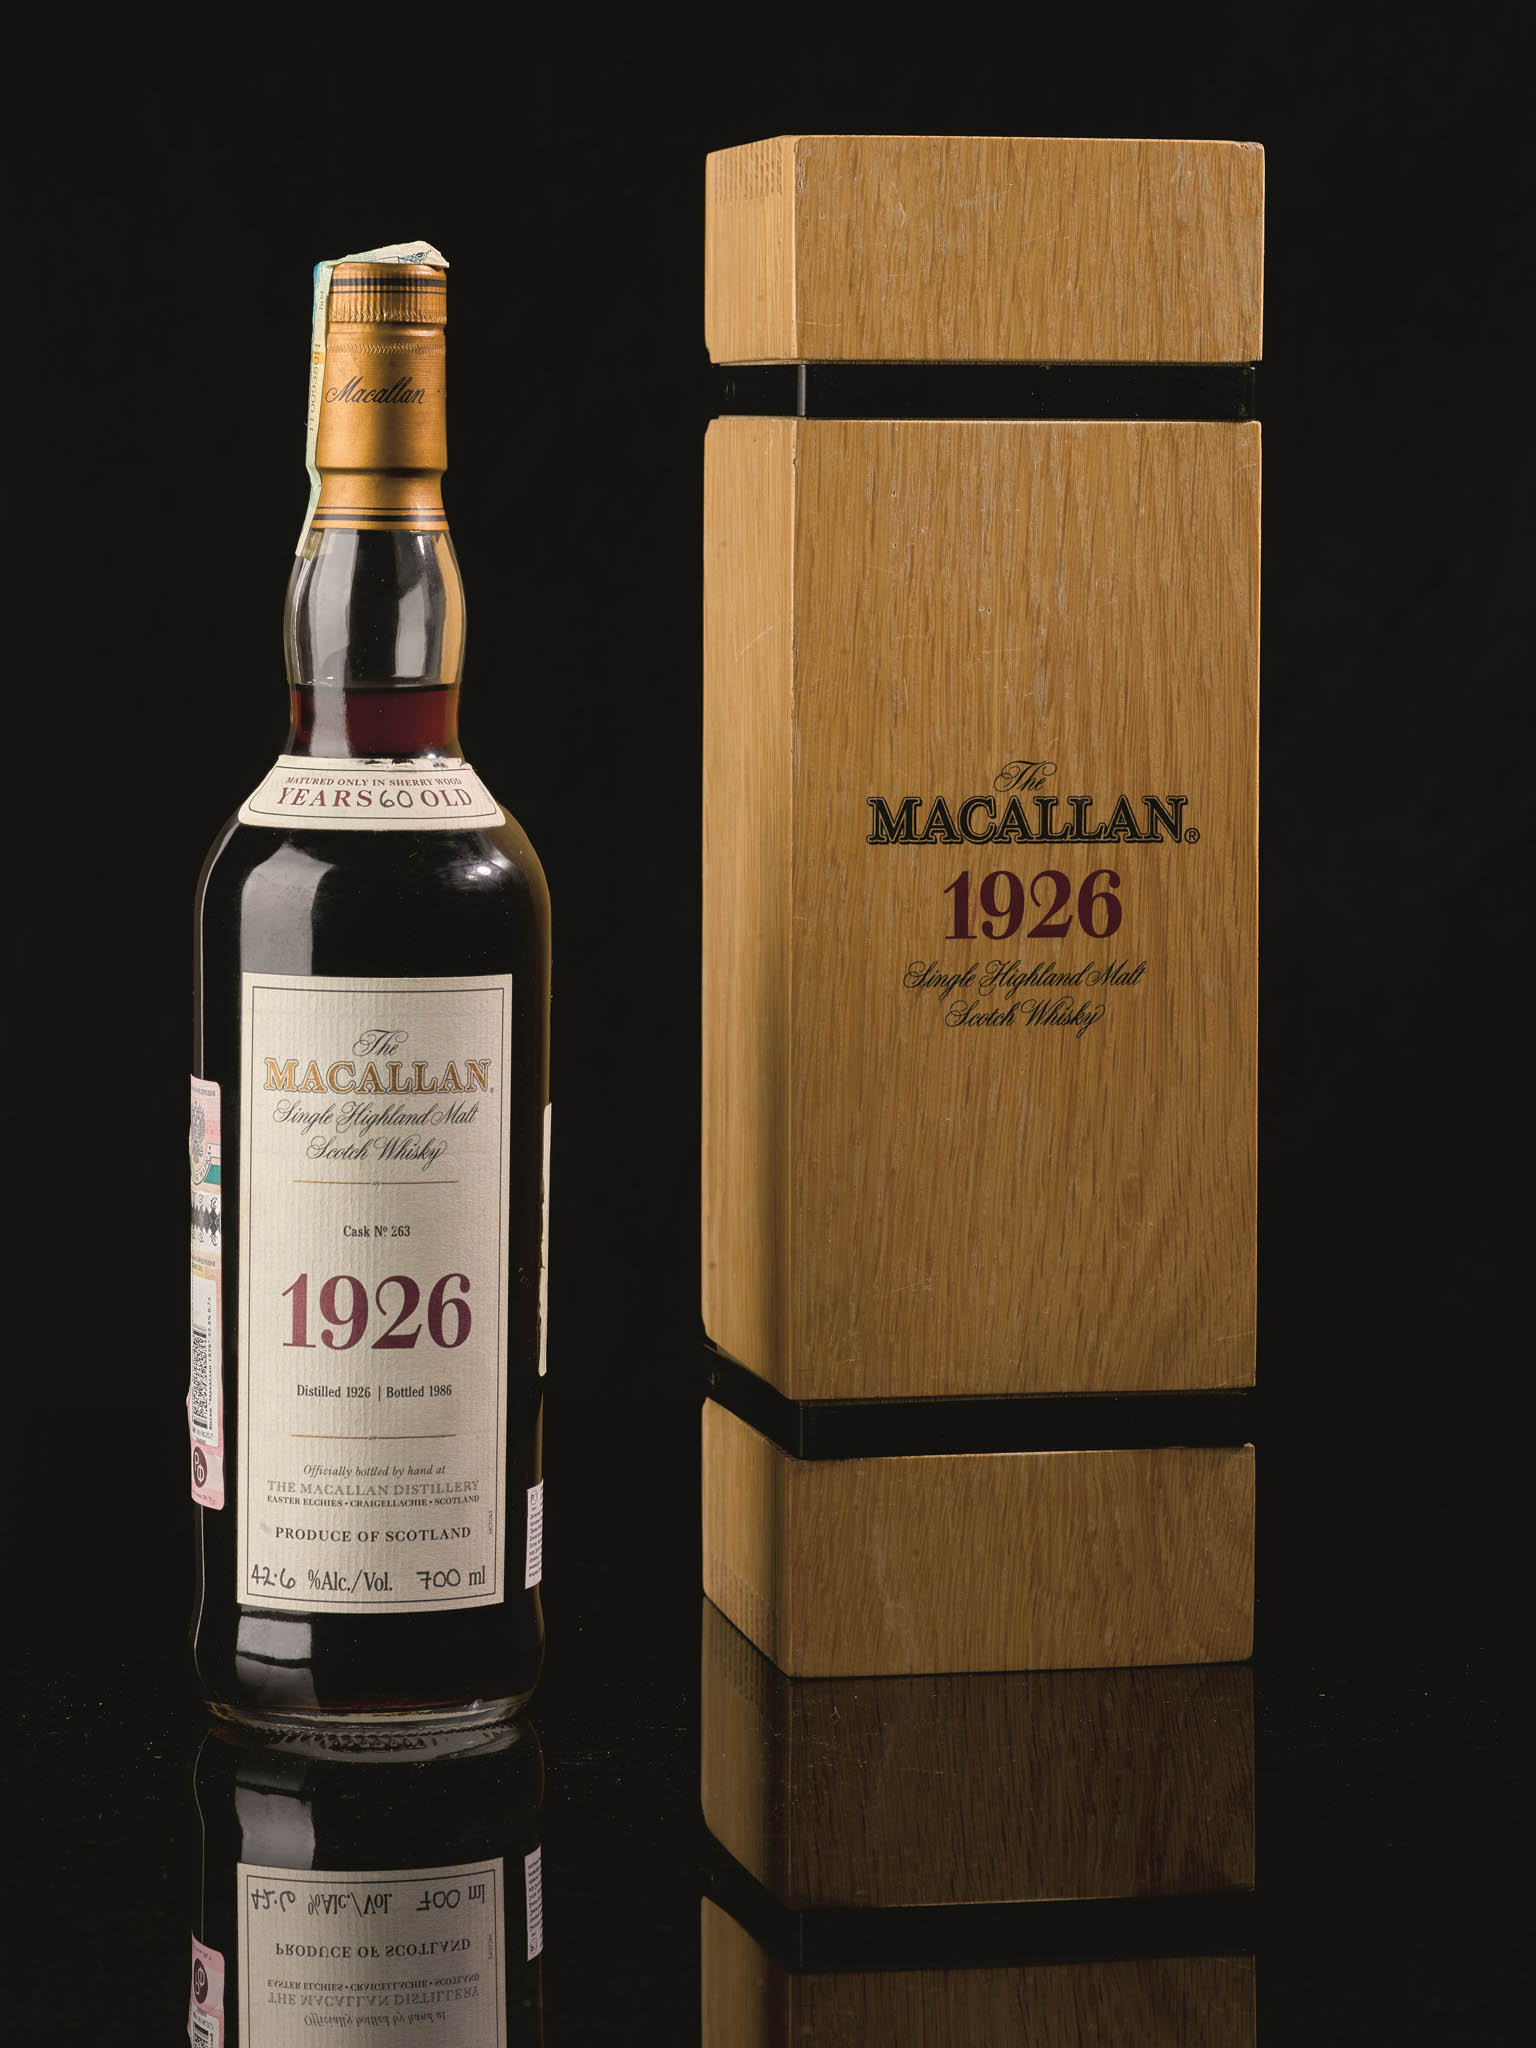 The Macallan 1926 Fine and Rare 60 Year Old – nejdražší whisky na svìtì byla vydražena v roce 2019 za 1,9 milionu dolarù.